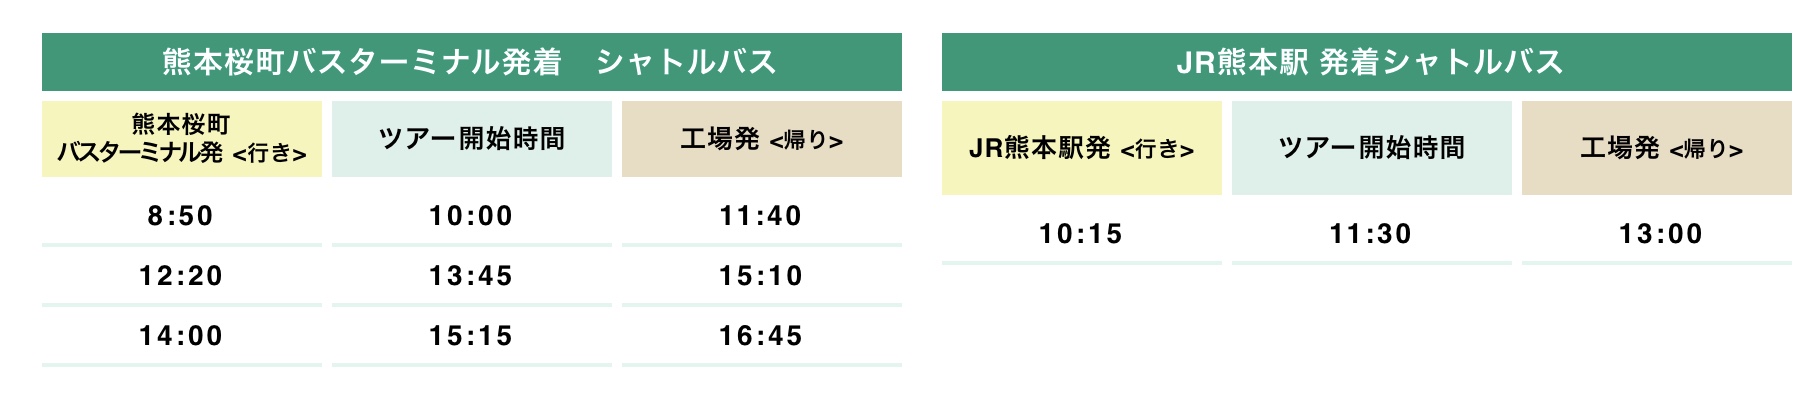 サントリー熊本の工場見学シャトルバス時刻表